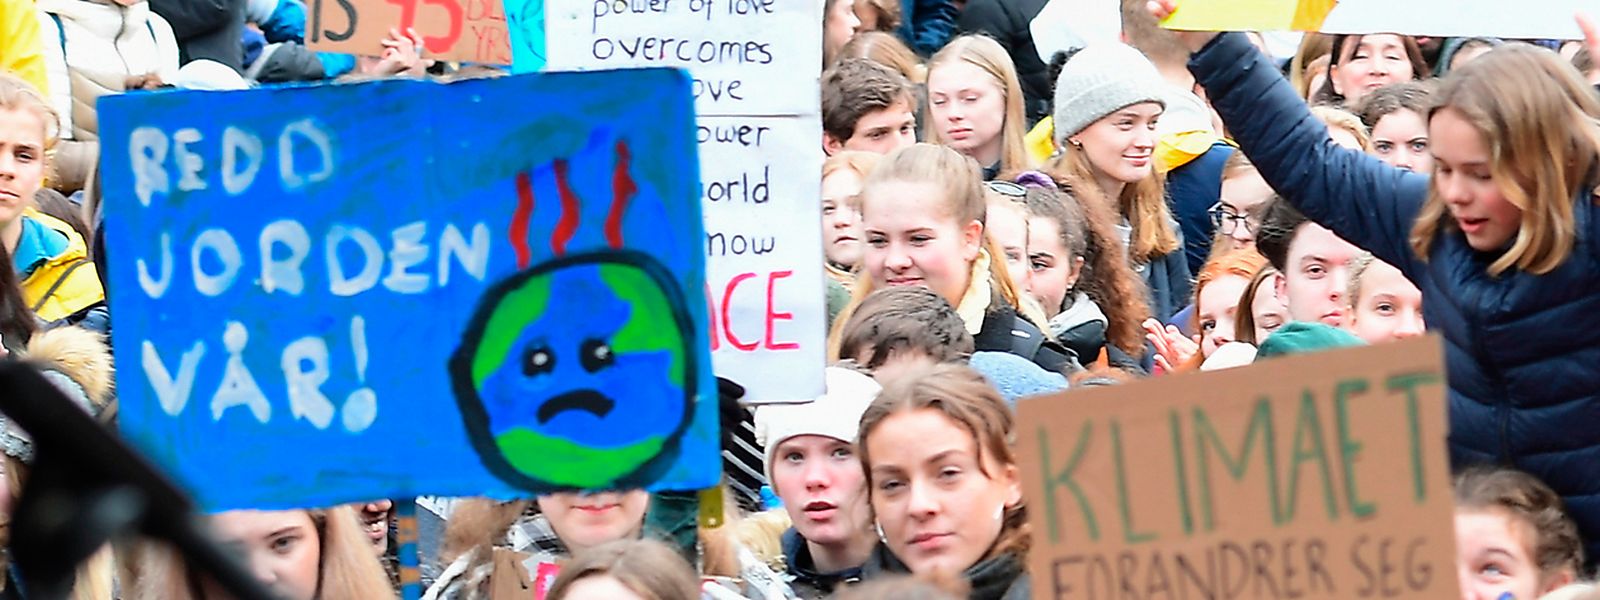 Europaweit gehen junge Menschen für mehr Klimaschutz auf die Straßen - verkennt die Politik den Ernst der Lage?